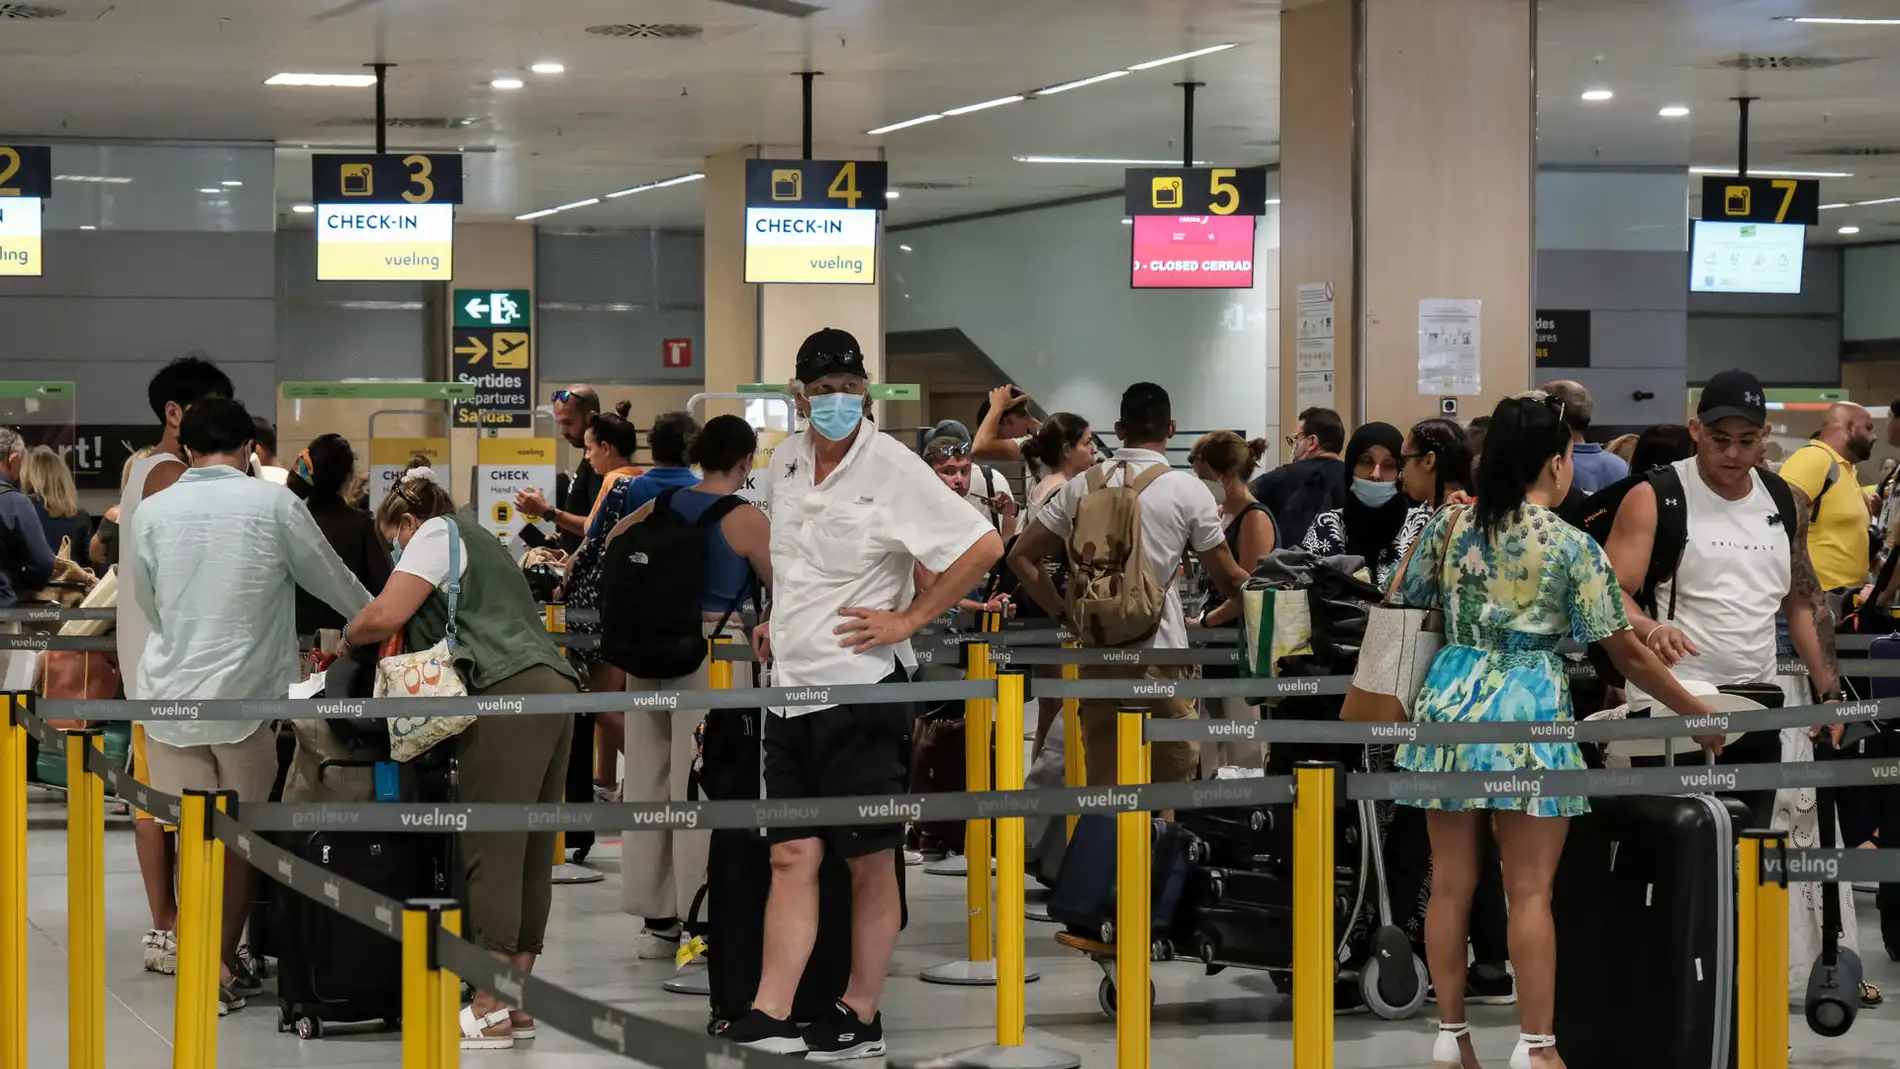 Cancelados o desviados 119 vuelos hasta las 19:00 horas en los aeropuertos de Baleares